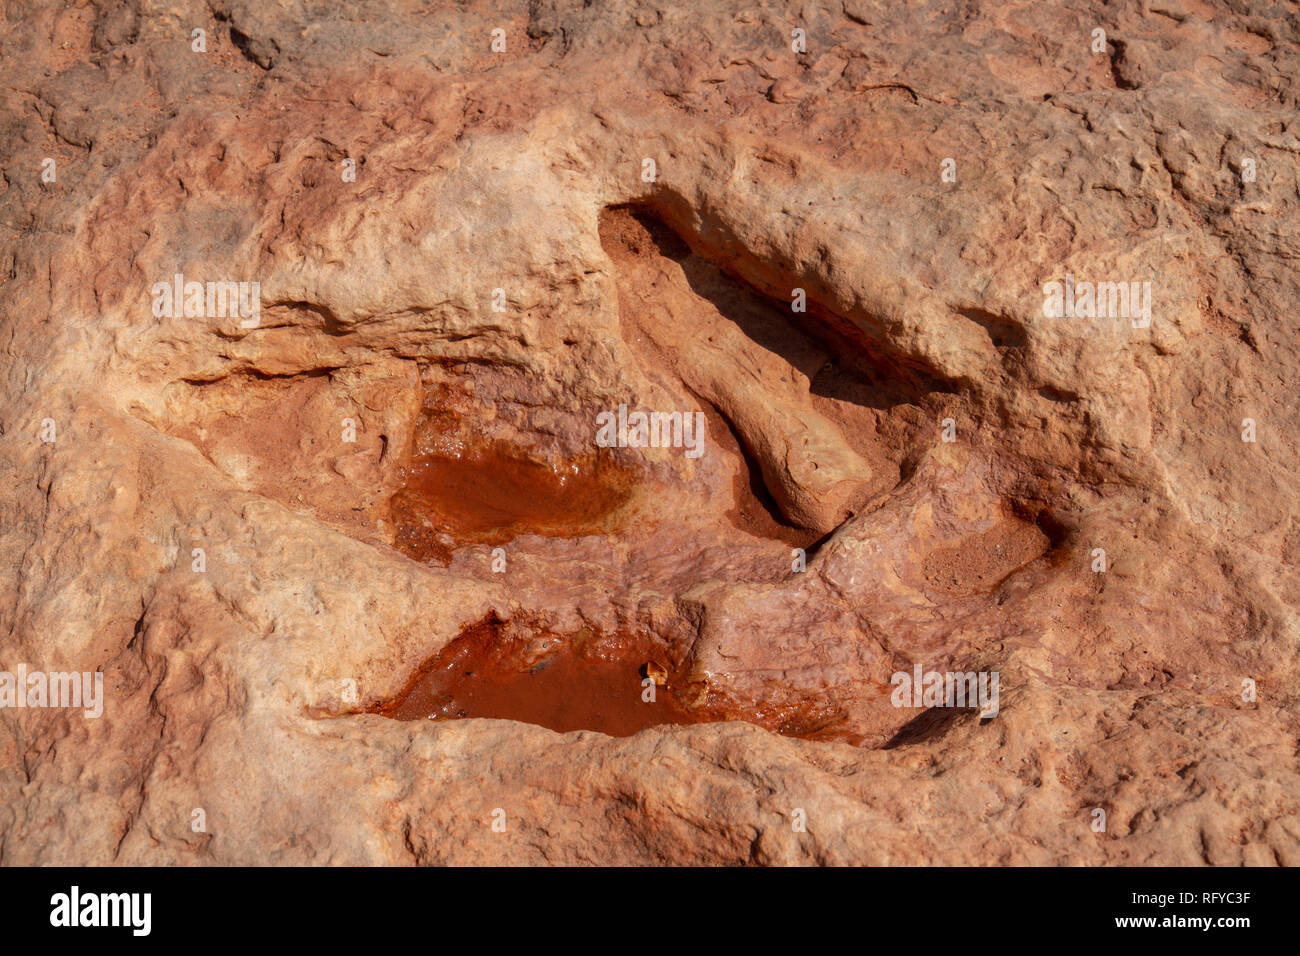 Close up of three toed dinosaur tracks at the Moenkopi Dinosaur Tracks site near Tuba City, Arizona, United States. Stock Photo